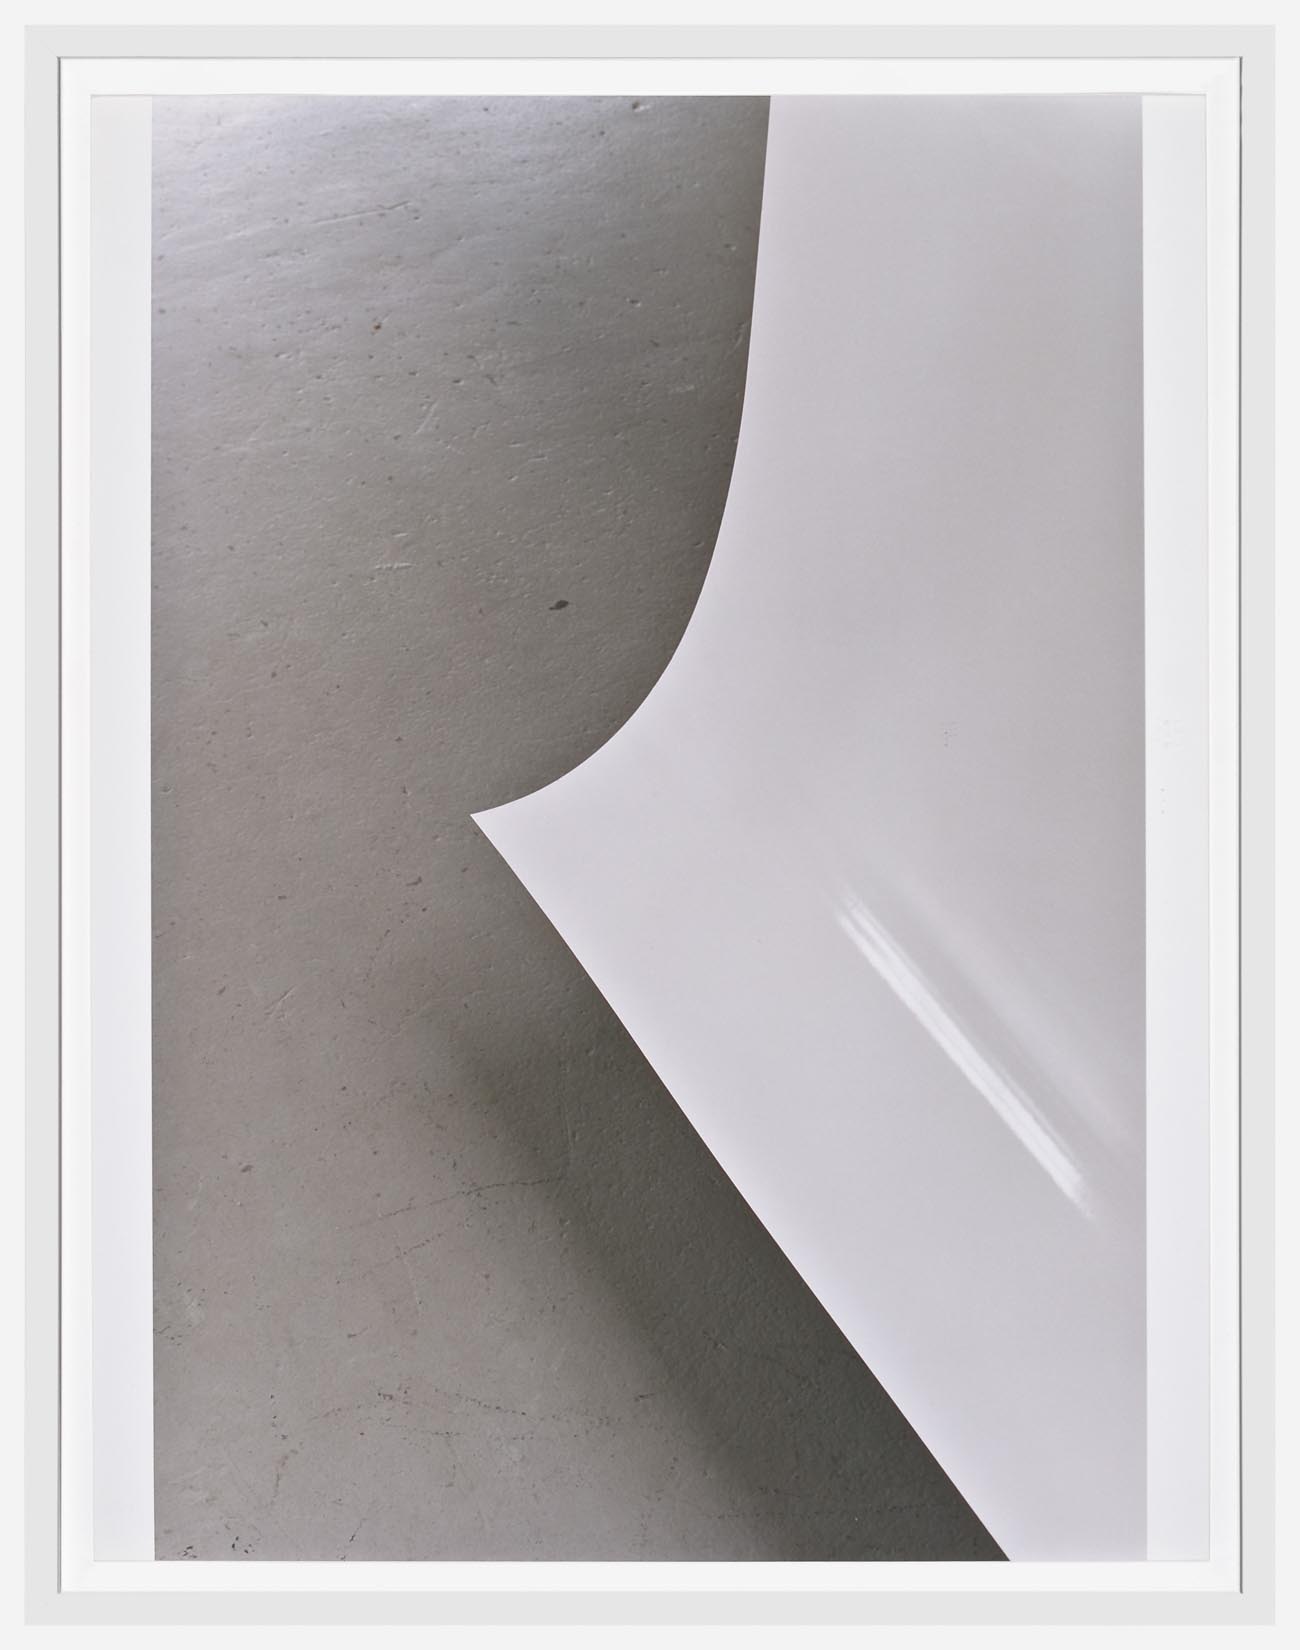     Wolfgang Tillmans Paper Drop (White) B 2004 c-prints 44 x 33.9 cm    